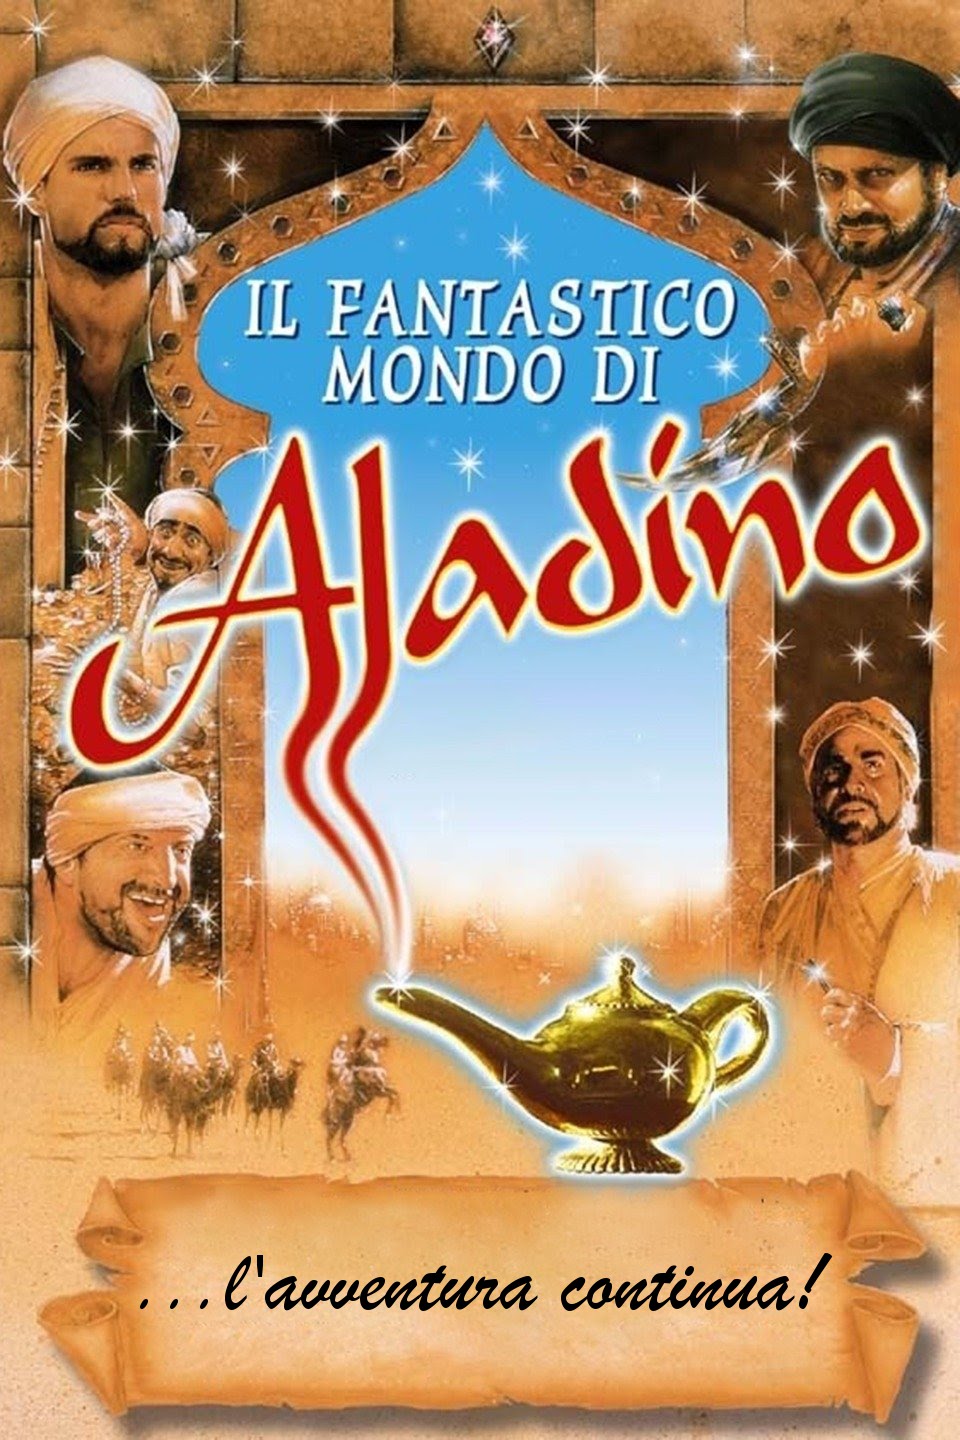 Il fantastico mondo di Aladino [HD] (1997)